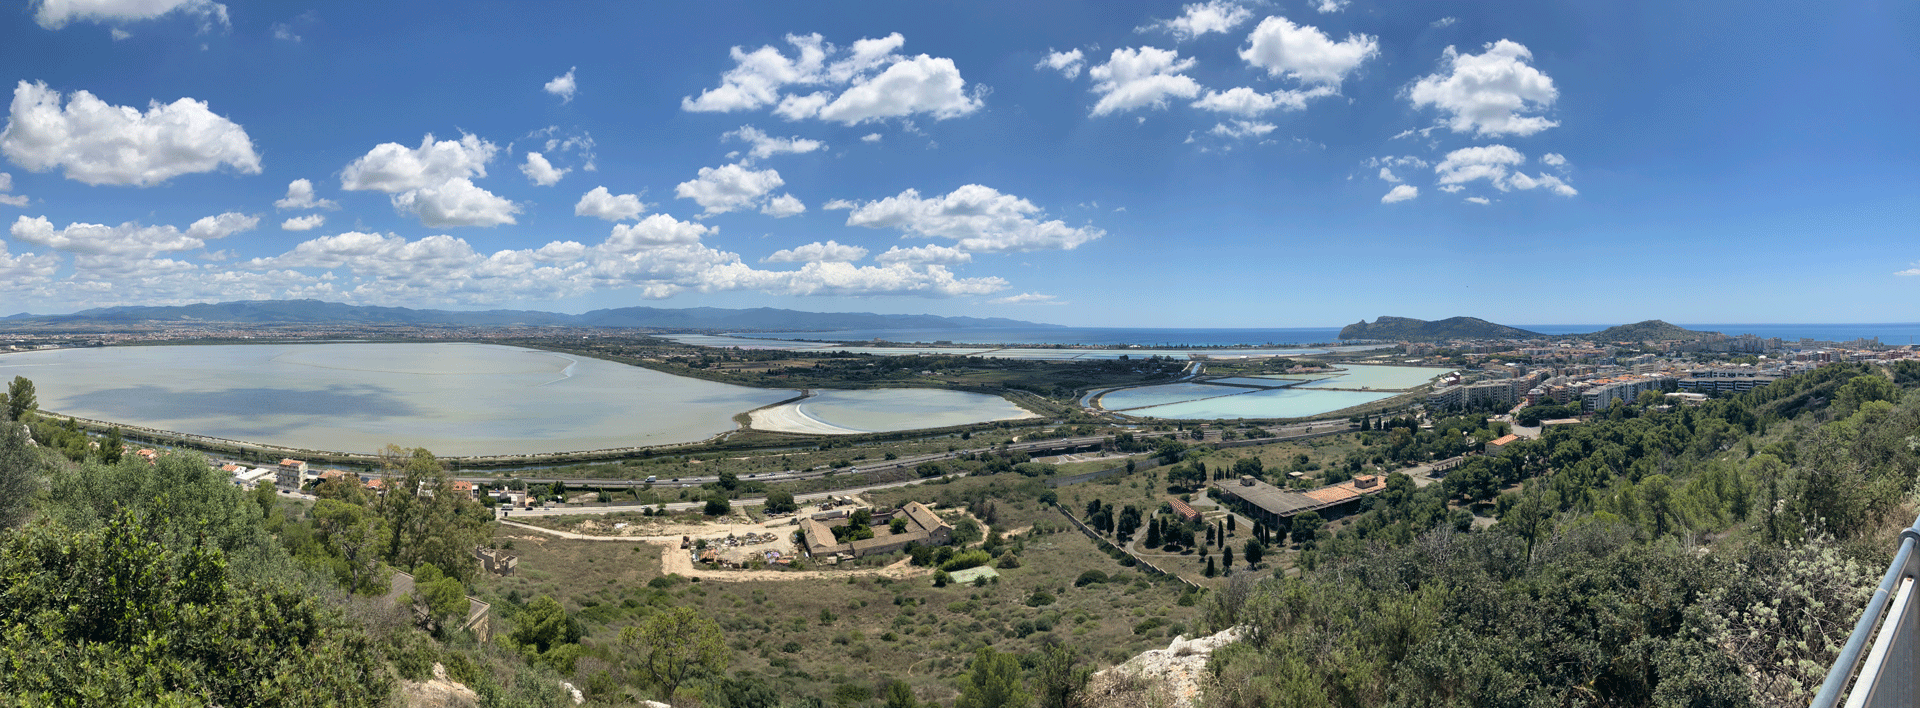 Aussichtspunkt Monte Urpinu in Cagliari - Panorama